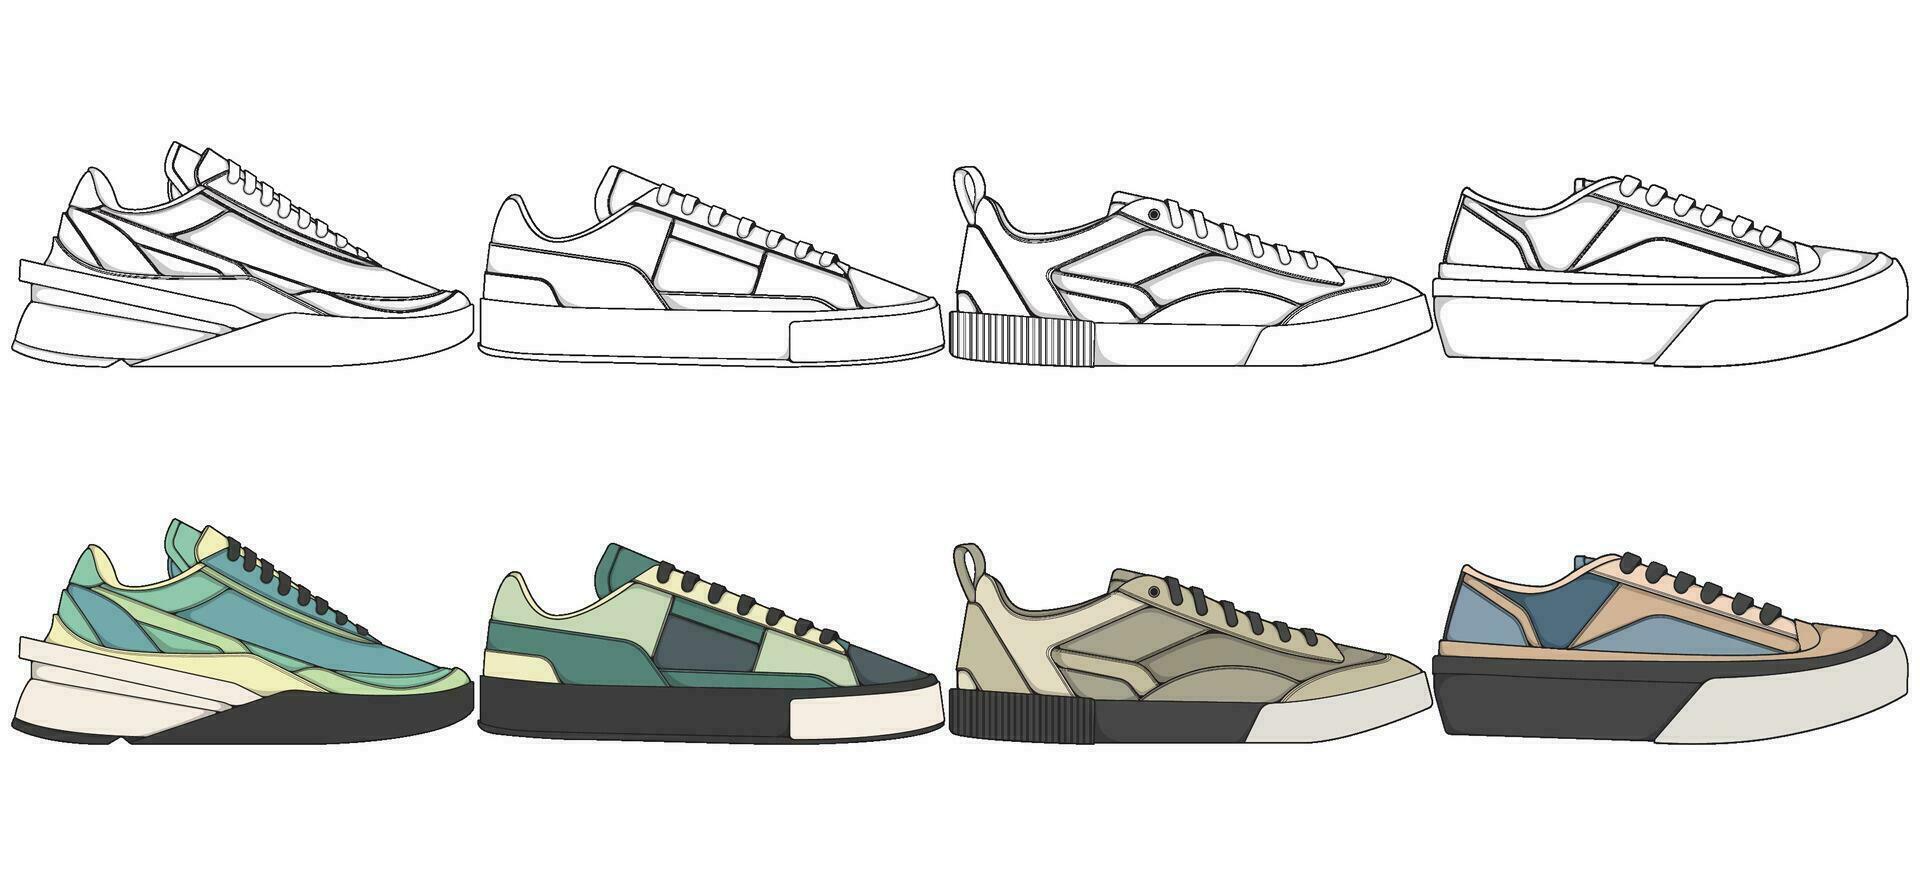 conjunto de Zapatos zapatilla de deporte dibujo vector, zapatillas dibujado en un bosquejo estilo, empaquetar zapatillas entrenadores plantilla, vector ilustración.